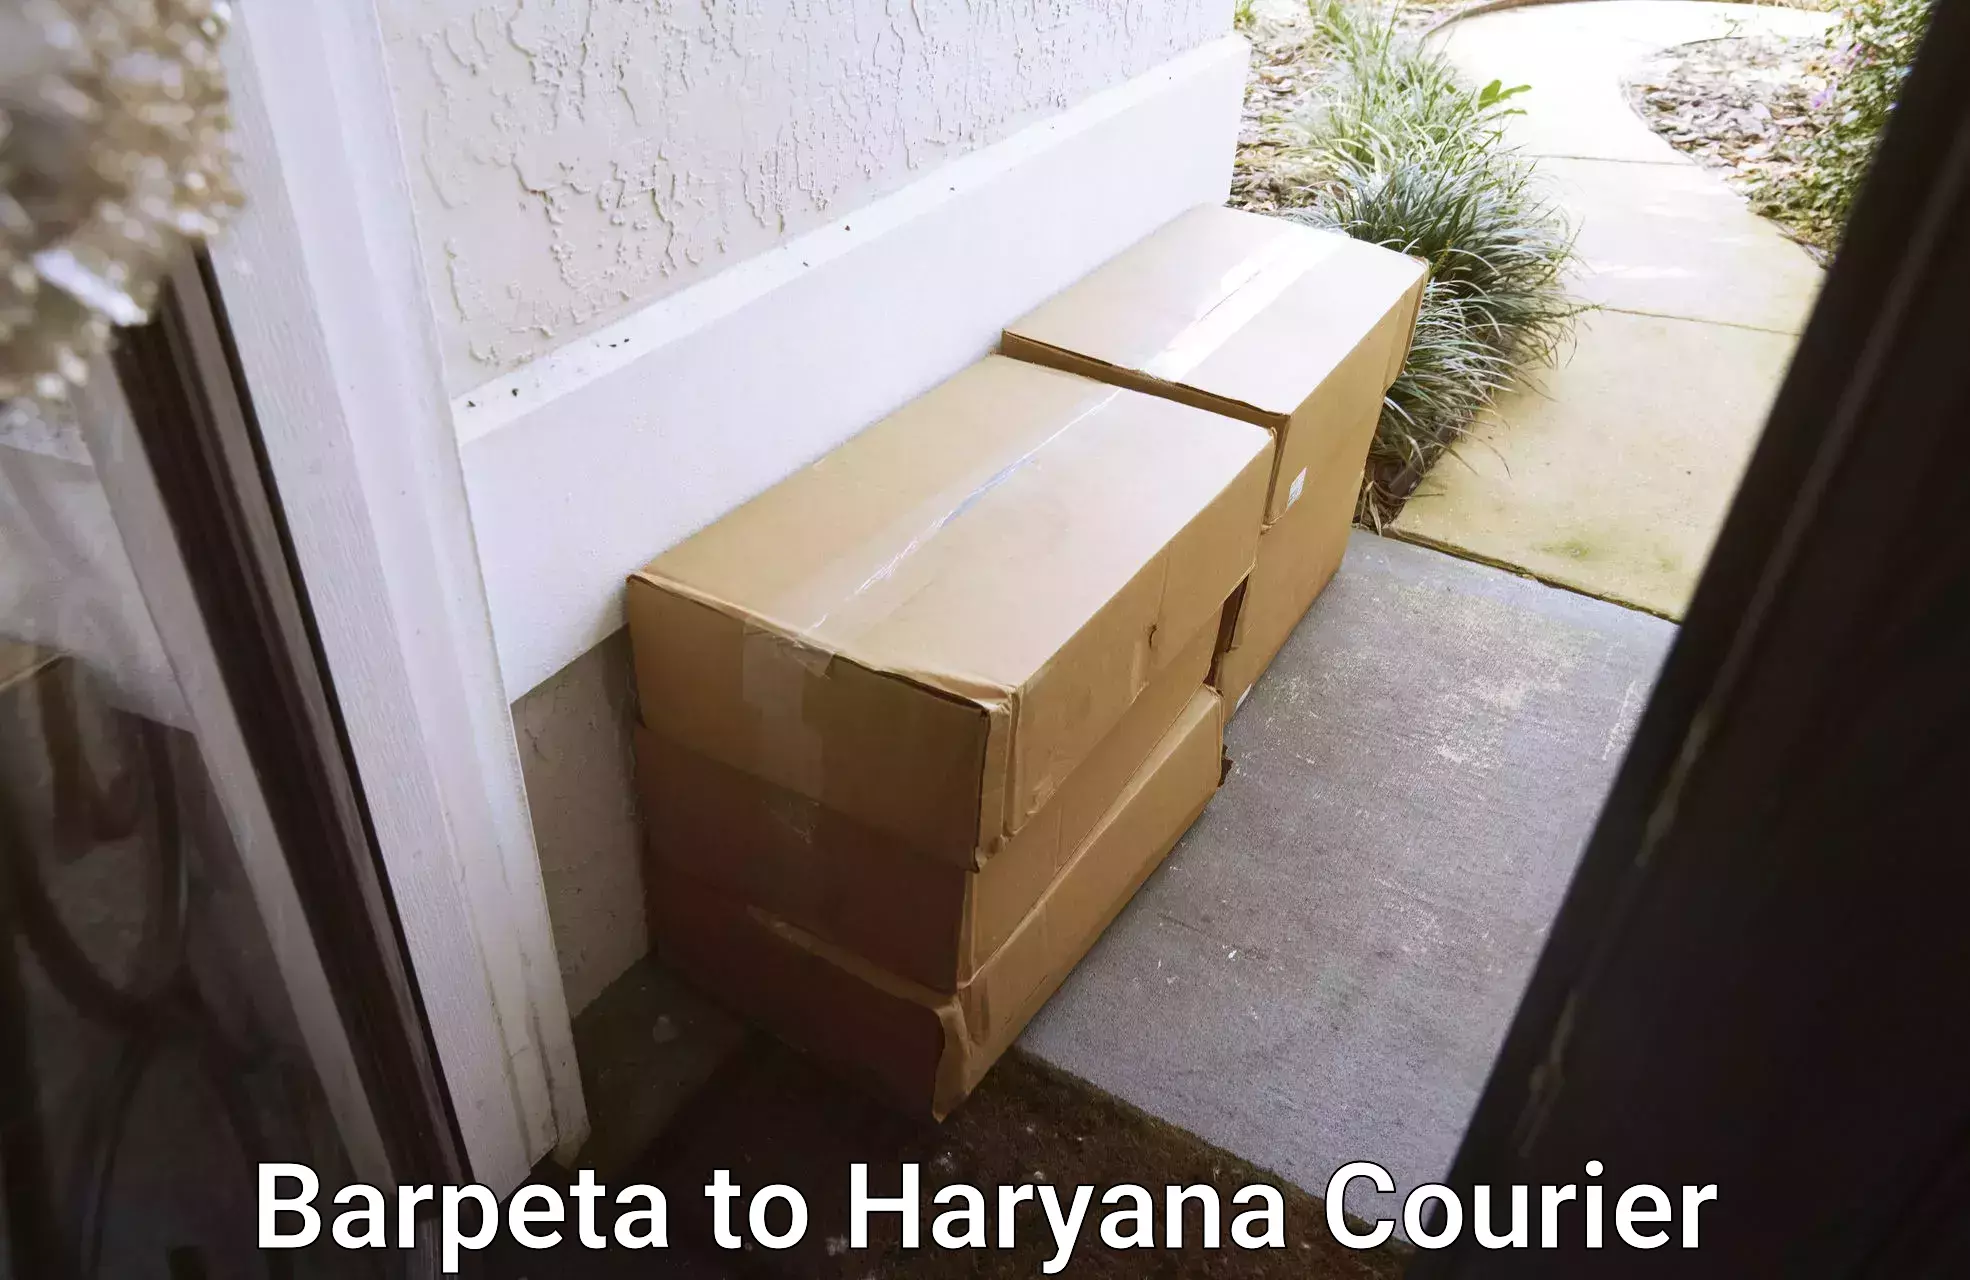 Bulk courier orders in Barpeta to Guhla